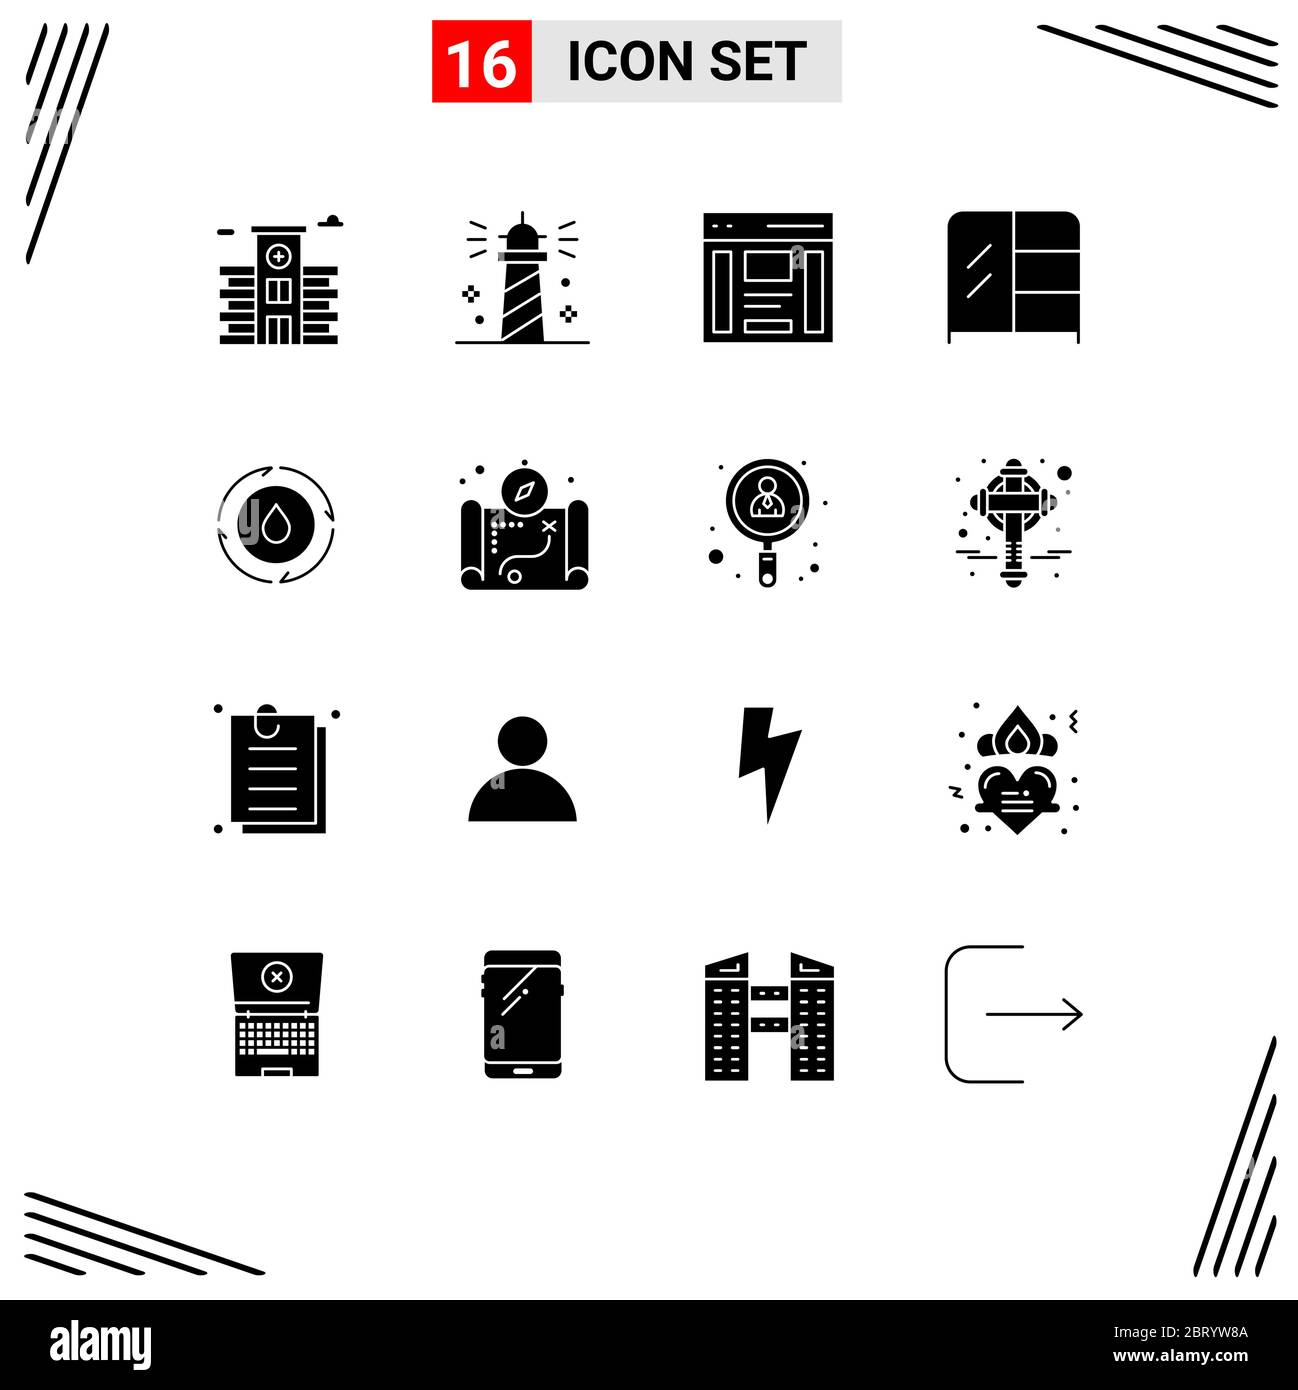 Modernes Set von 16 Solid Glyphen Piktogramm von Wasser, Kleiderschrank, Kommunikation, Interieur, Sidebar editierbar Vektor Design-Elemente Stock Vektor